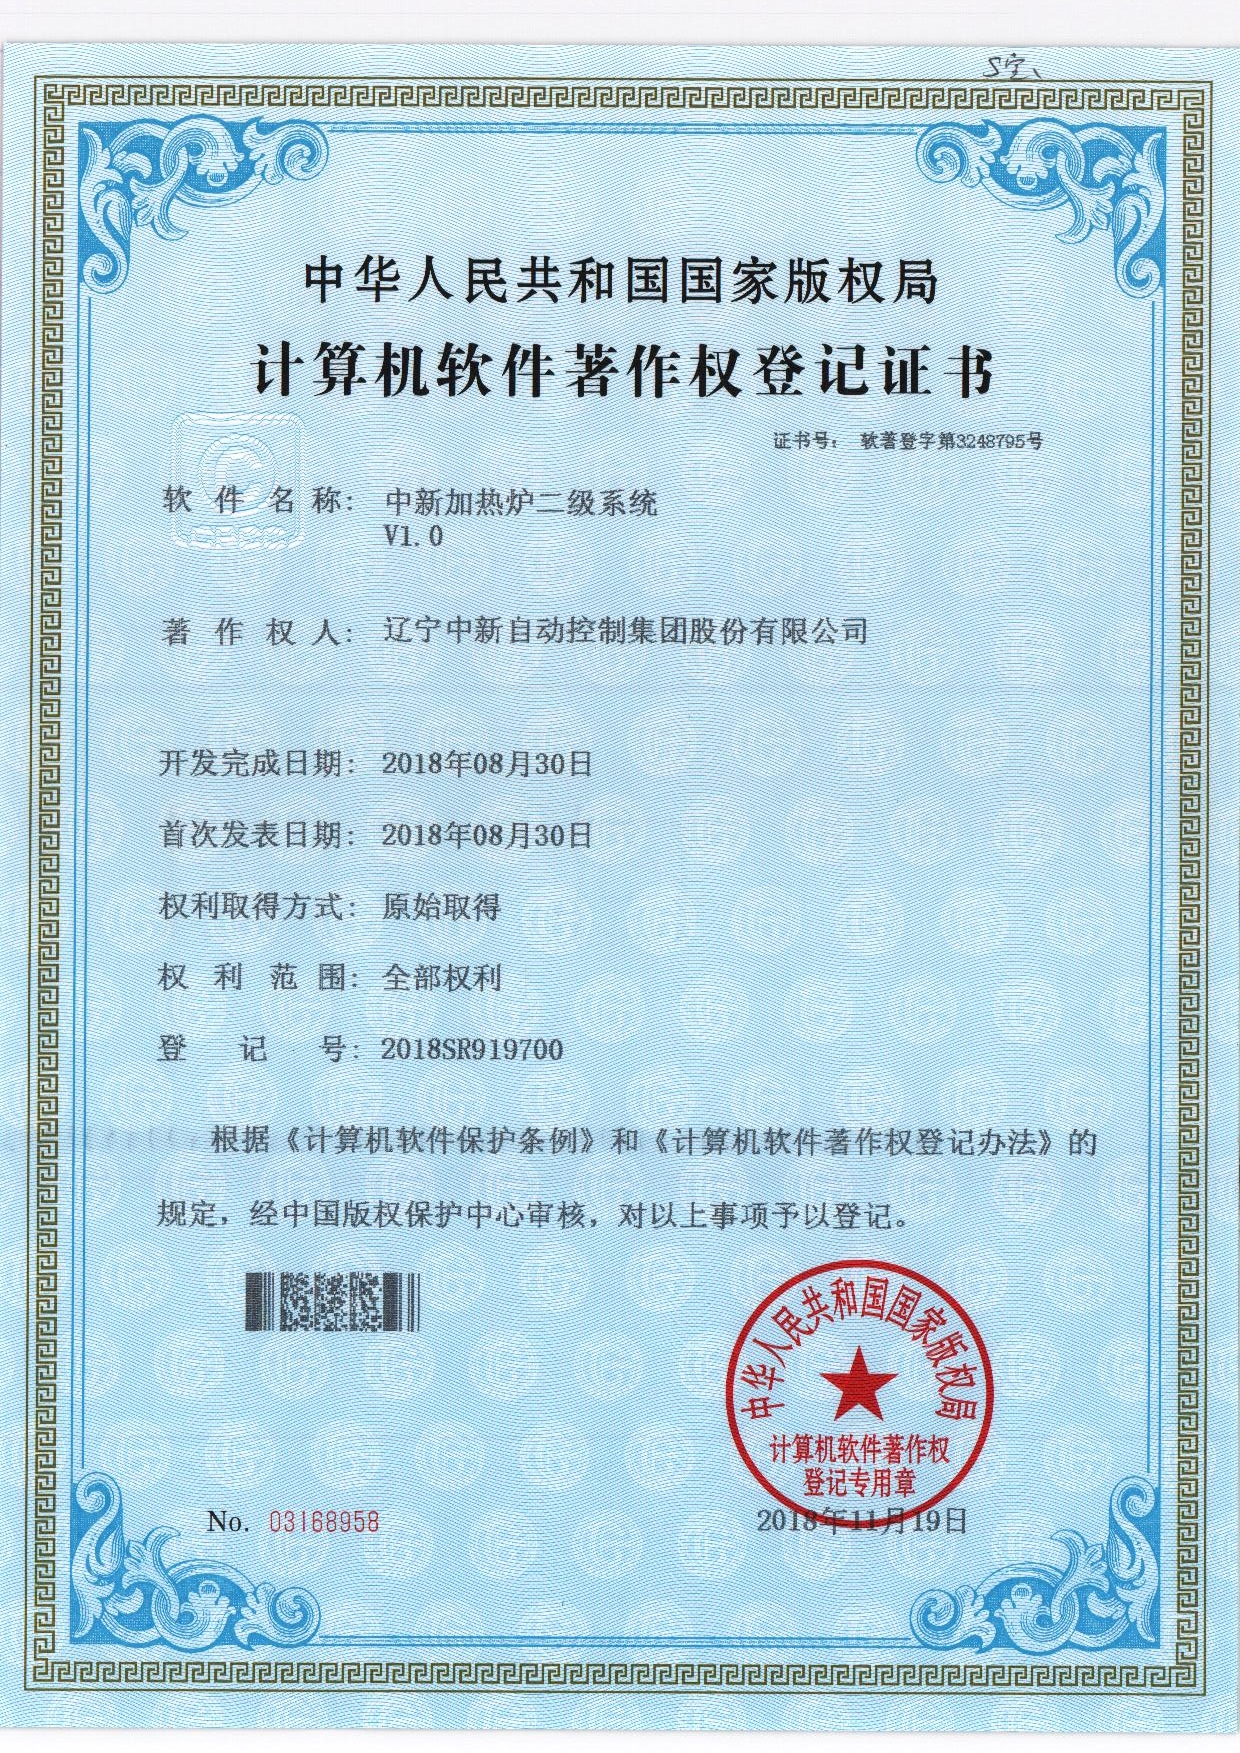 中新加热炉二级系统V1.0-资质证书-辽宁中新